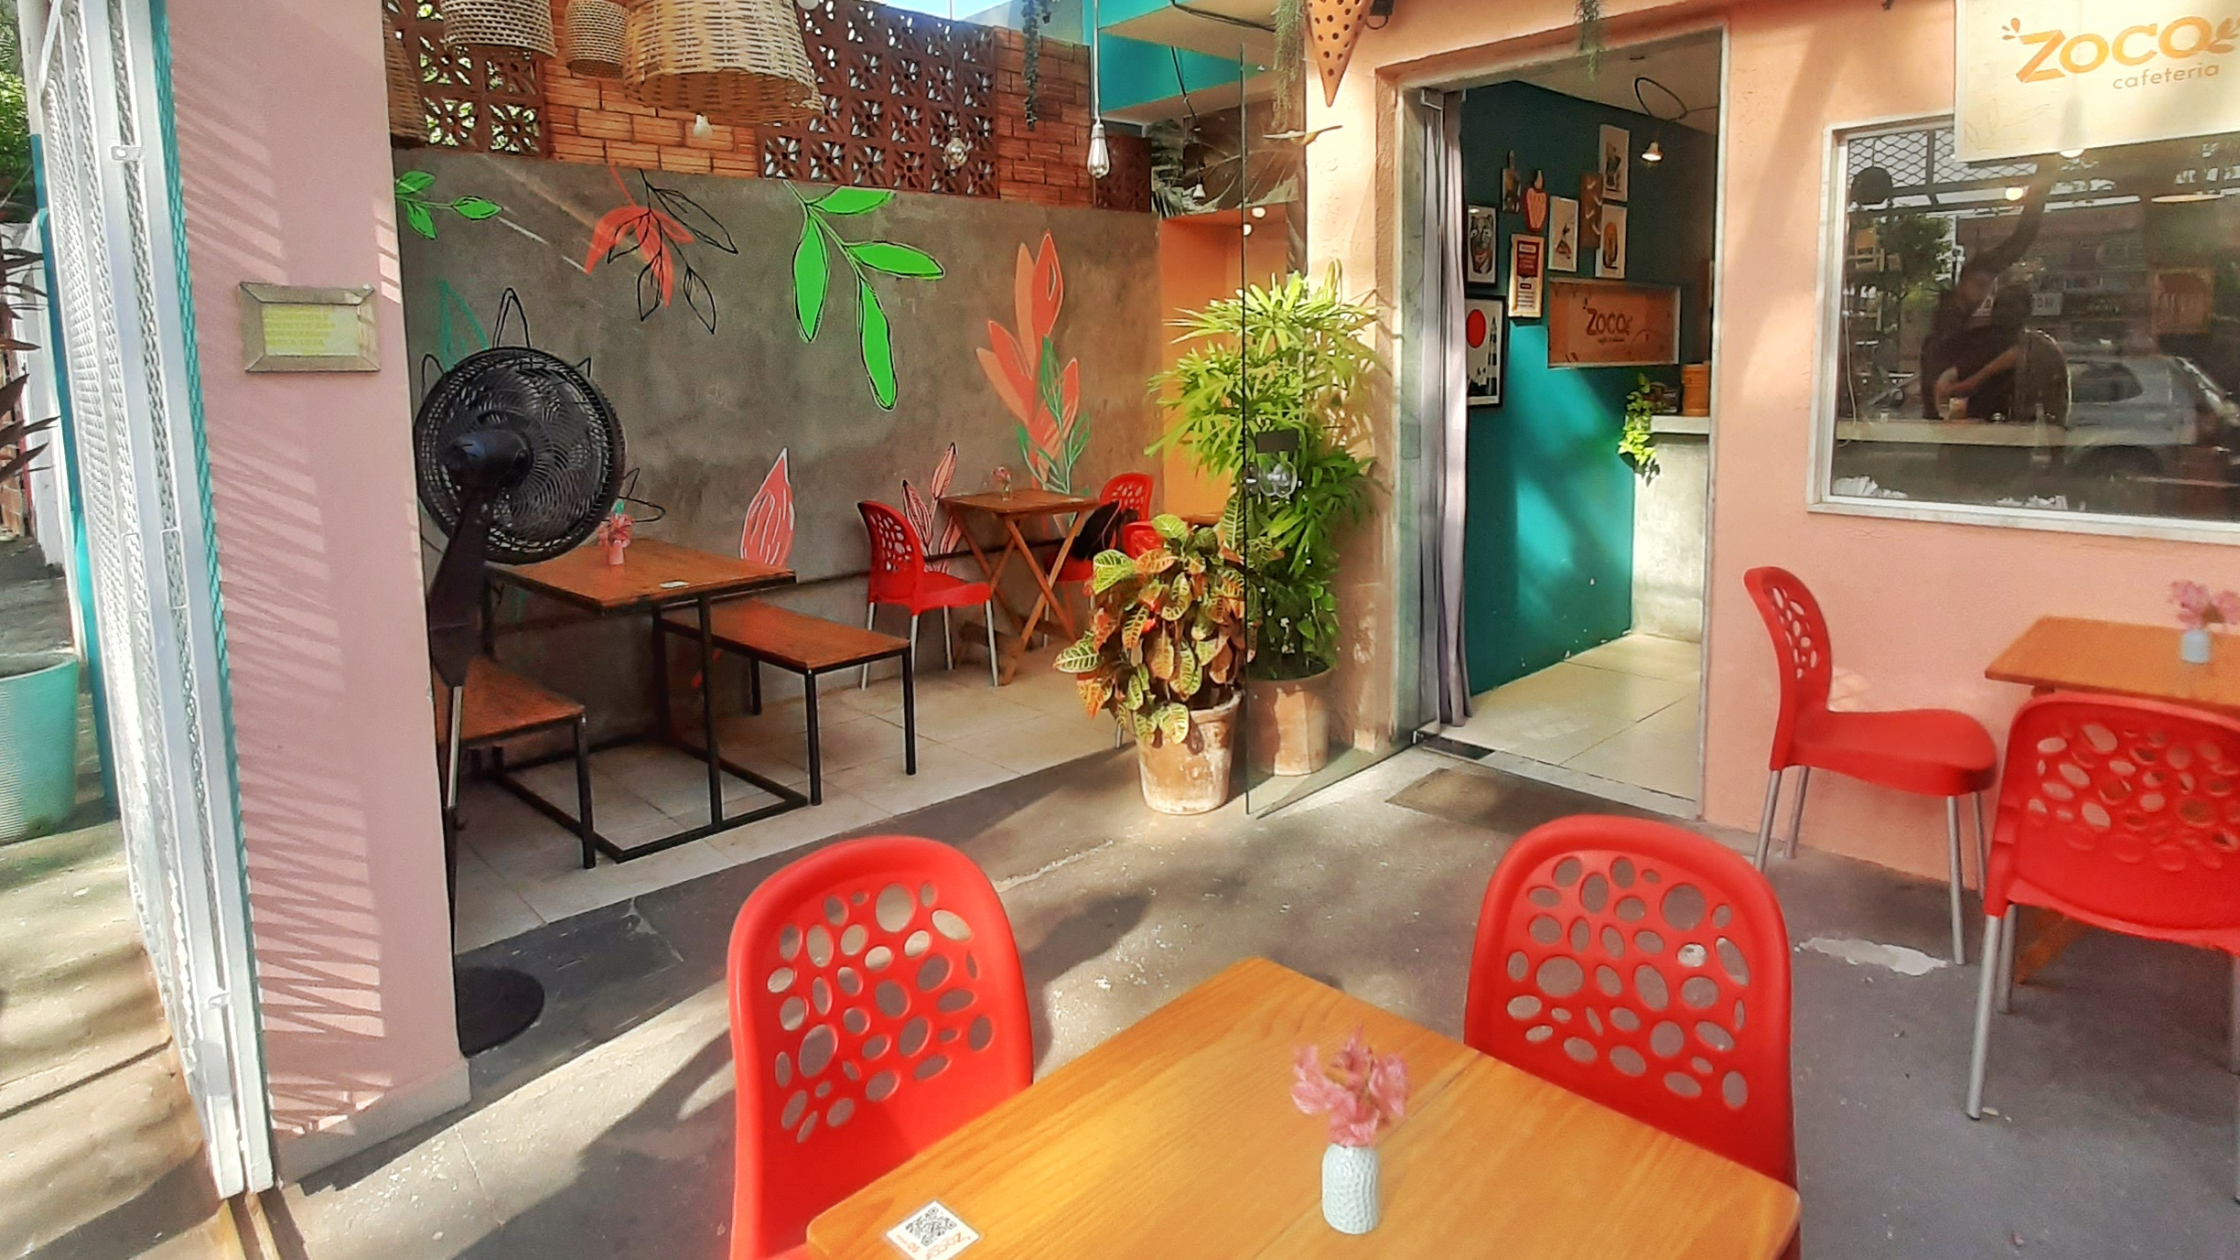 Onde comer em Recife e Olinda, imagem externa da Cafeteria Zoco.